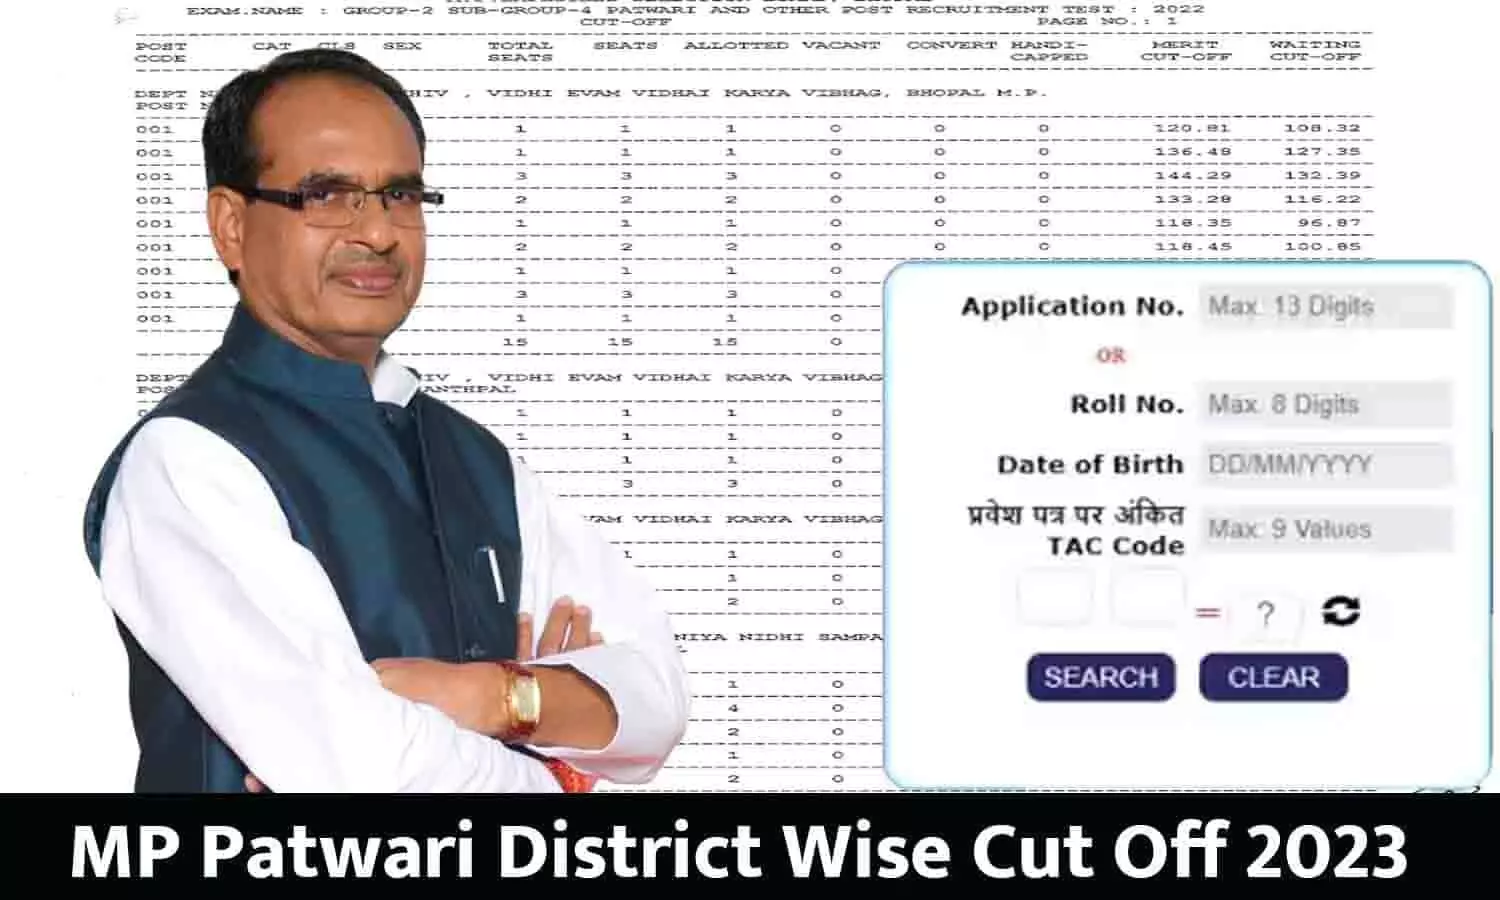 MP Patwari District Wise Cut Off 2023 Kitna Gaya: रिजल्ट हुआ जारी! आपके जिले का कट ऑफ कितना गया यहाँ से देखे?